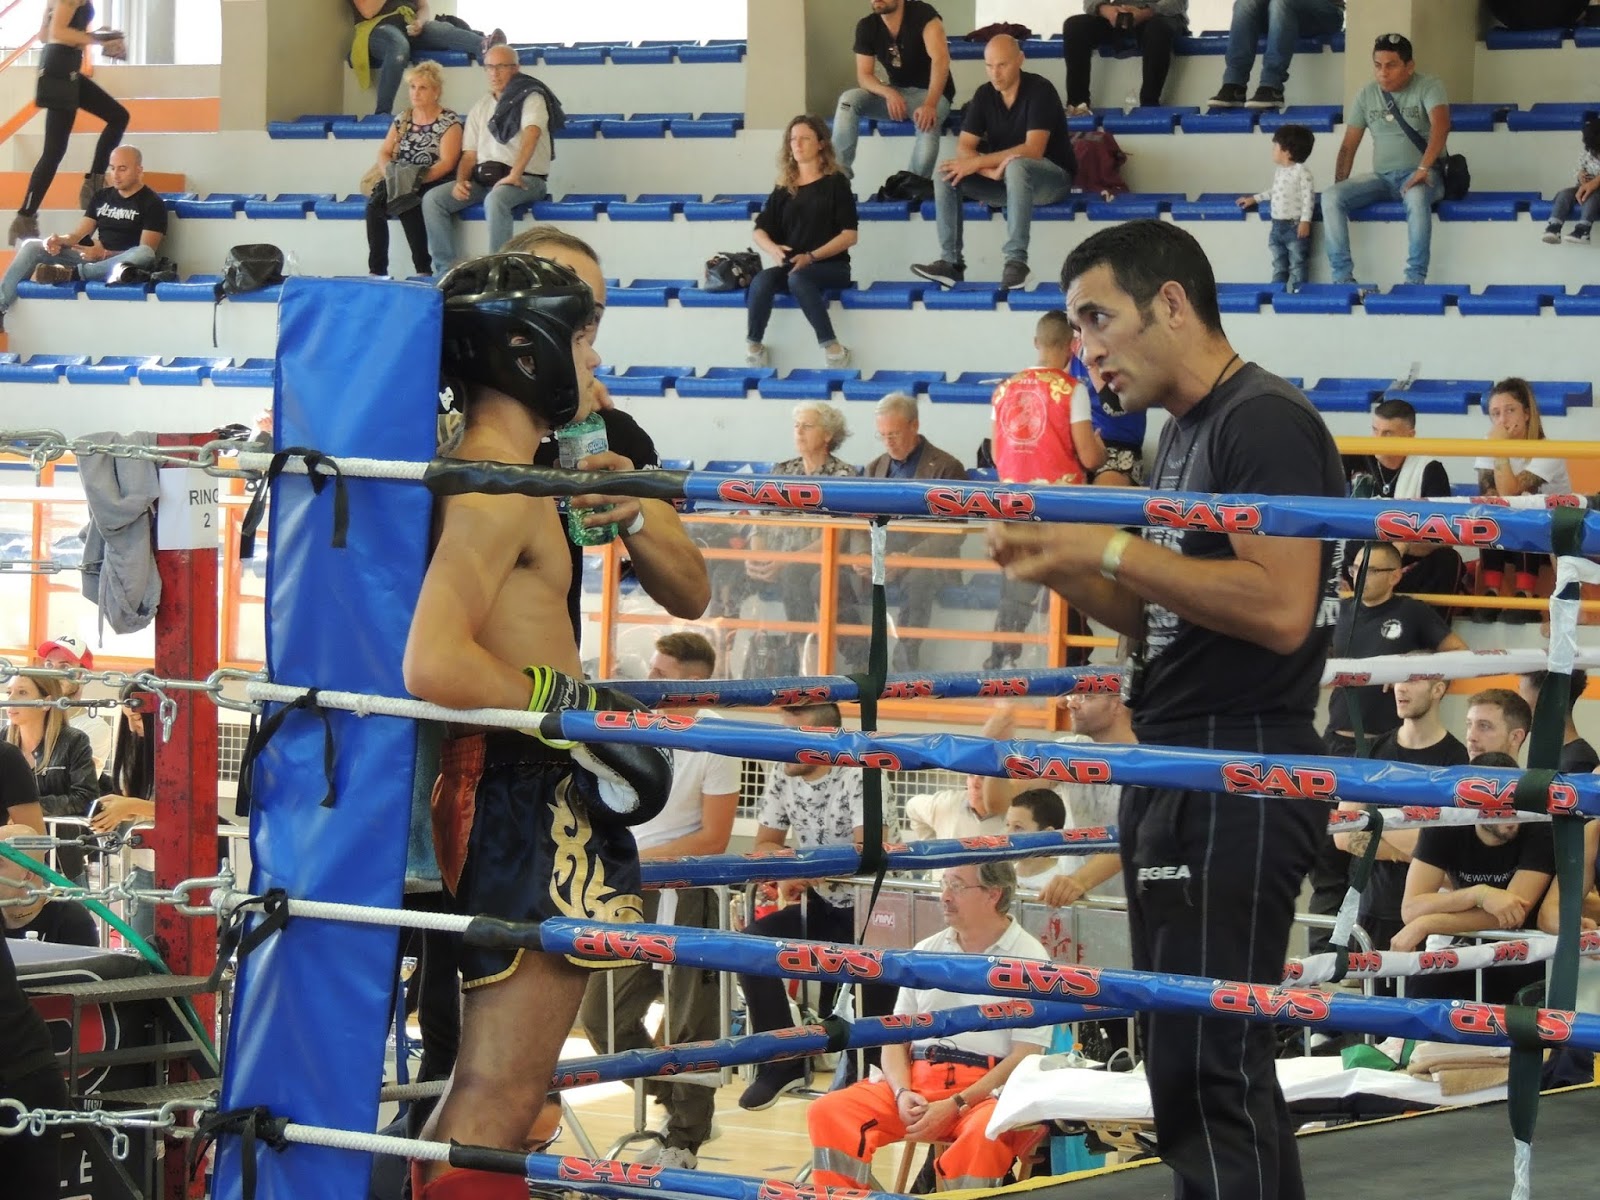 Kickboxing e Muay Thai al “Florence Fight 7”, brilla la delegazione lucana guidata dai Maestri Tralli e Clemente